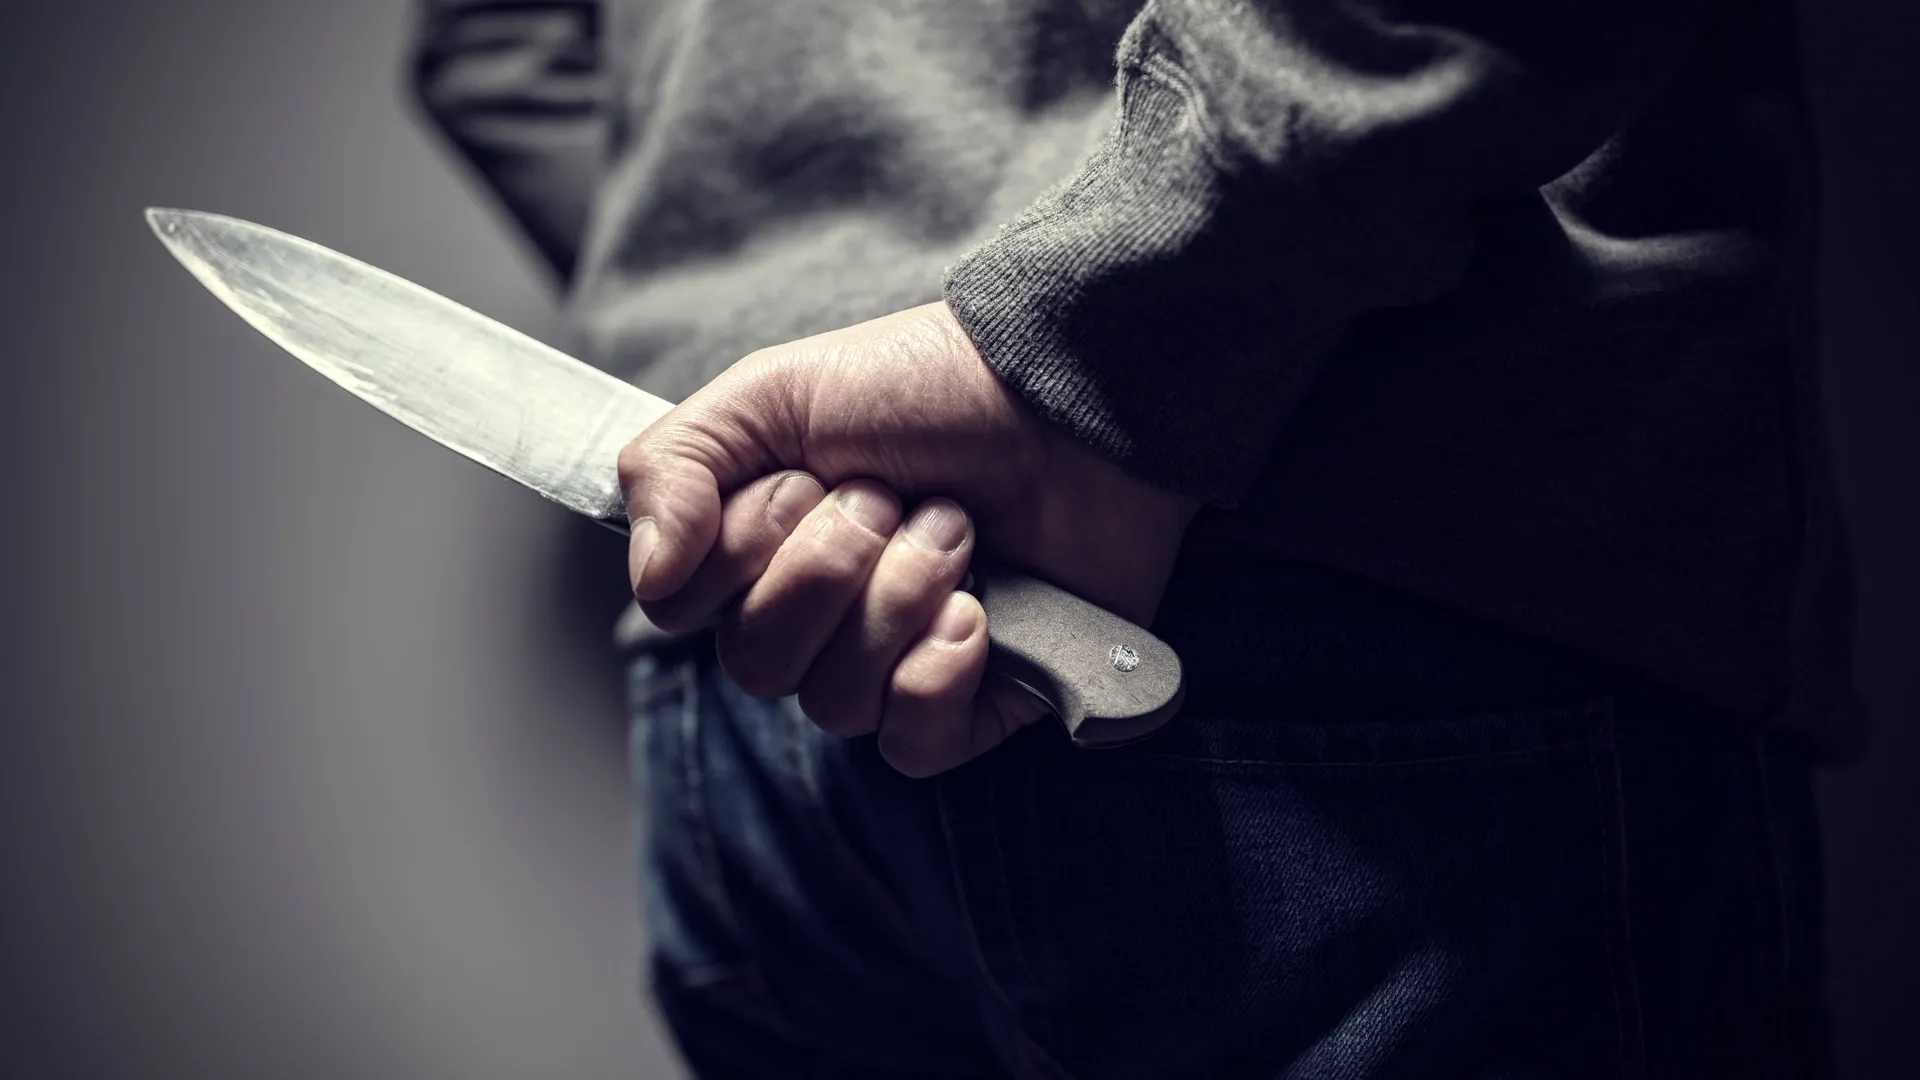 Правонарушителя, угрожавшего ножом продавщице, быстро поймали. Фото: Brian A Jackson / Shutterstock / Fotodom